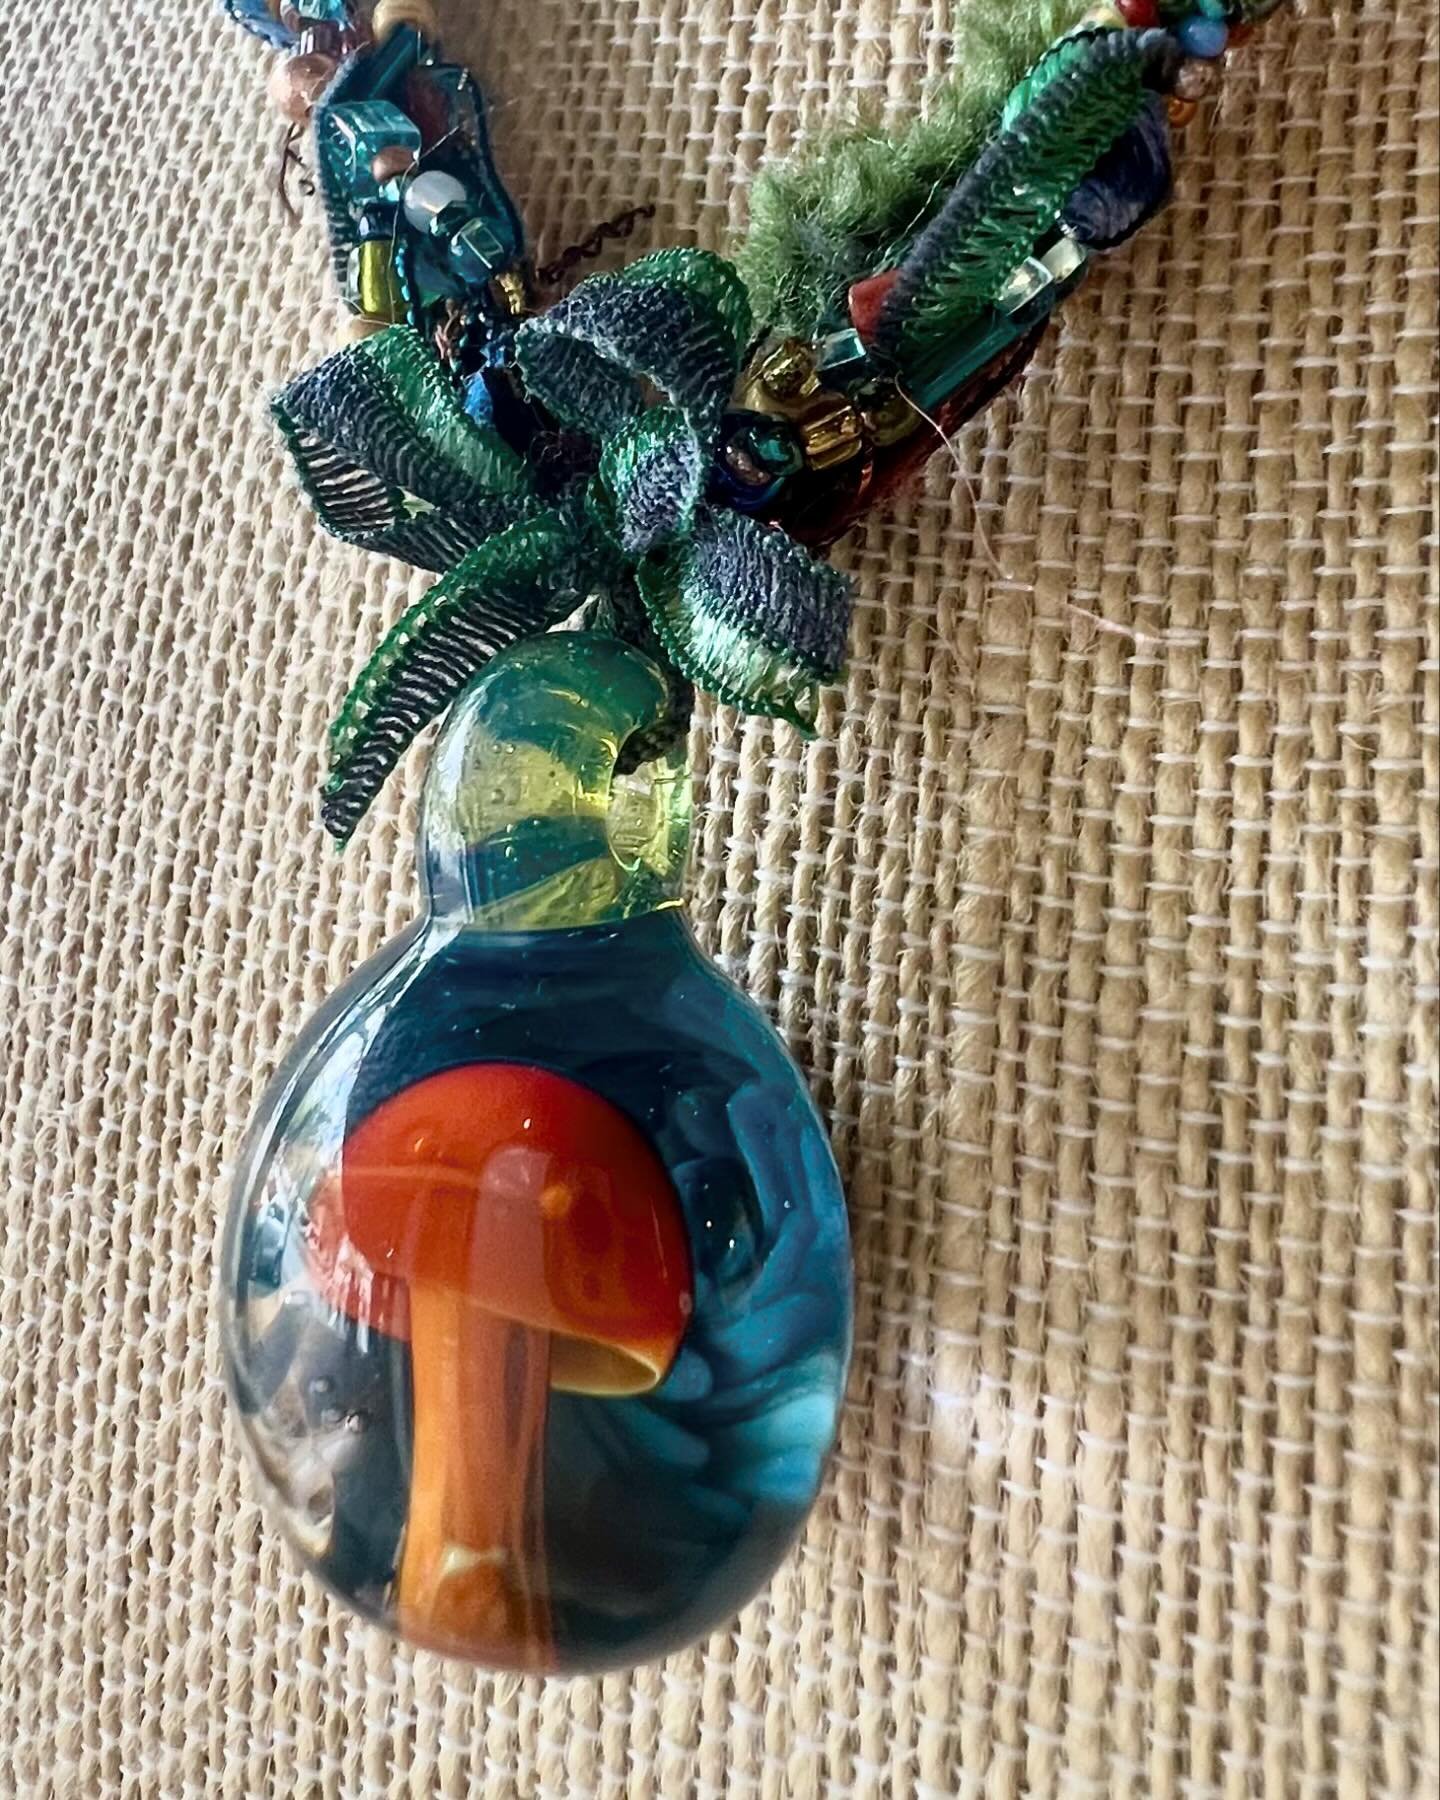 Handmade mushroom necklace by @doris_grieder available only from Kobo Gallery, 33 Barnard Street, Savannah GA. 
.
.
.
#KoboSav #KoboGallery #SavannahArt #Art912 #SavannahArtist #SavannahGallery #handmadenecklace #mushroomnecklace #mushroomart #glassn